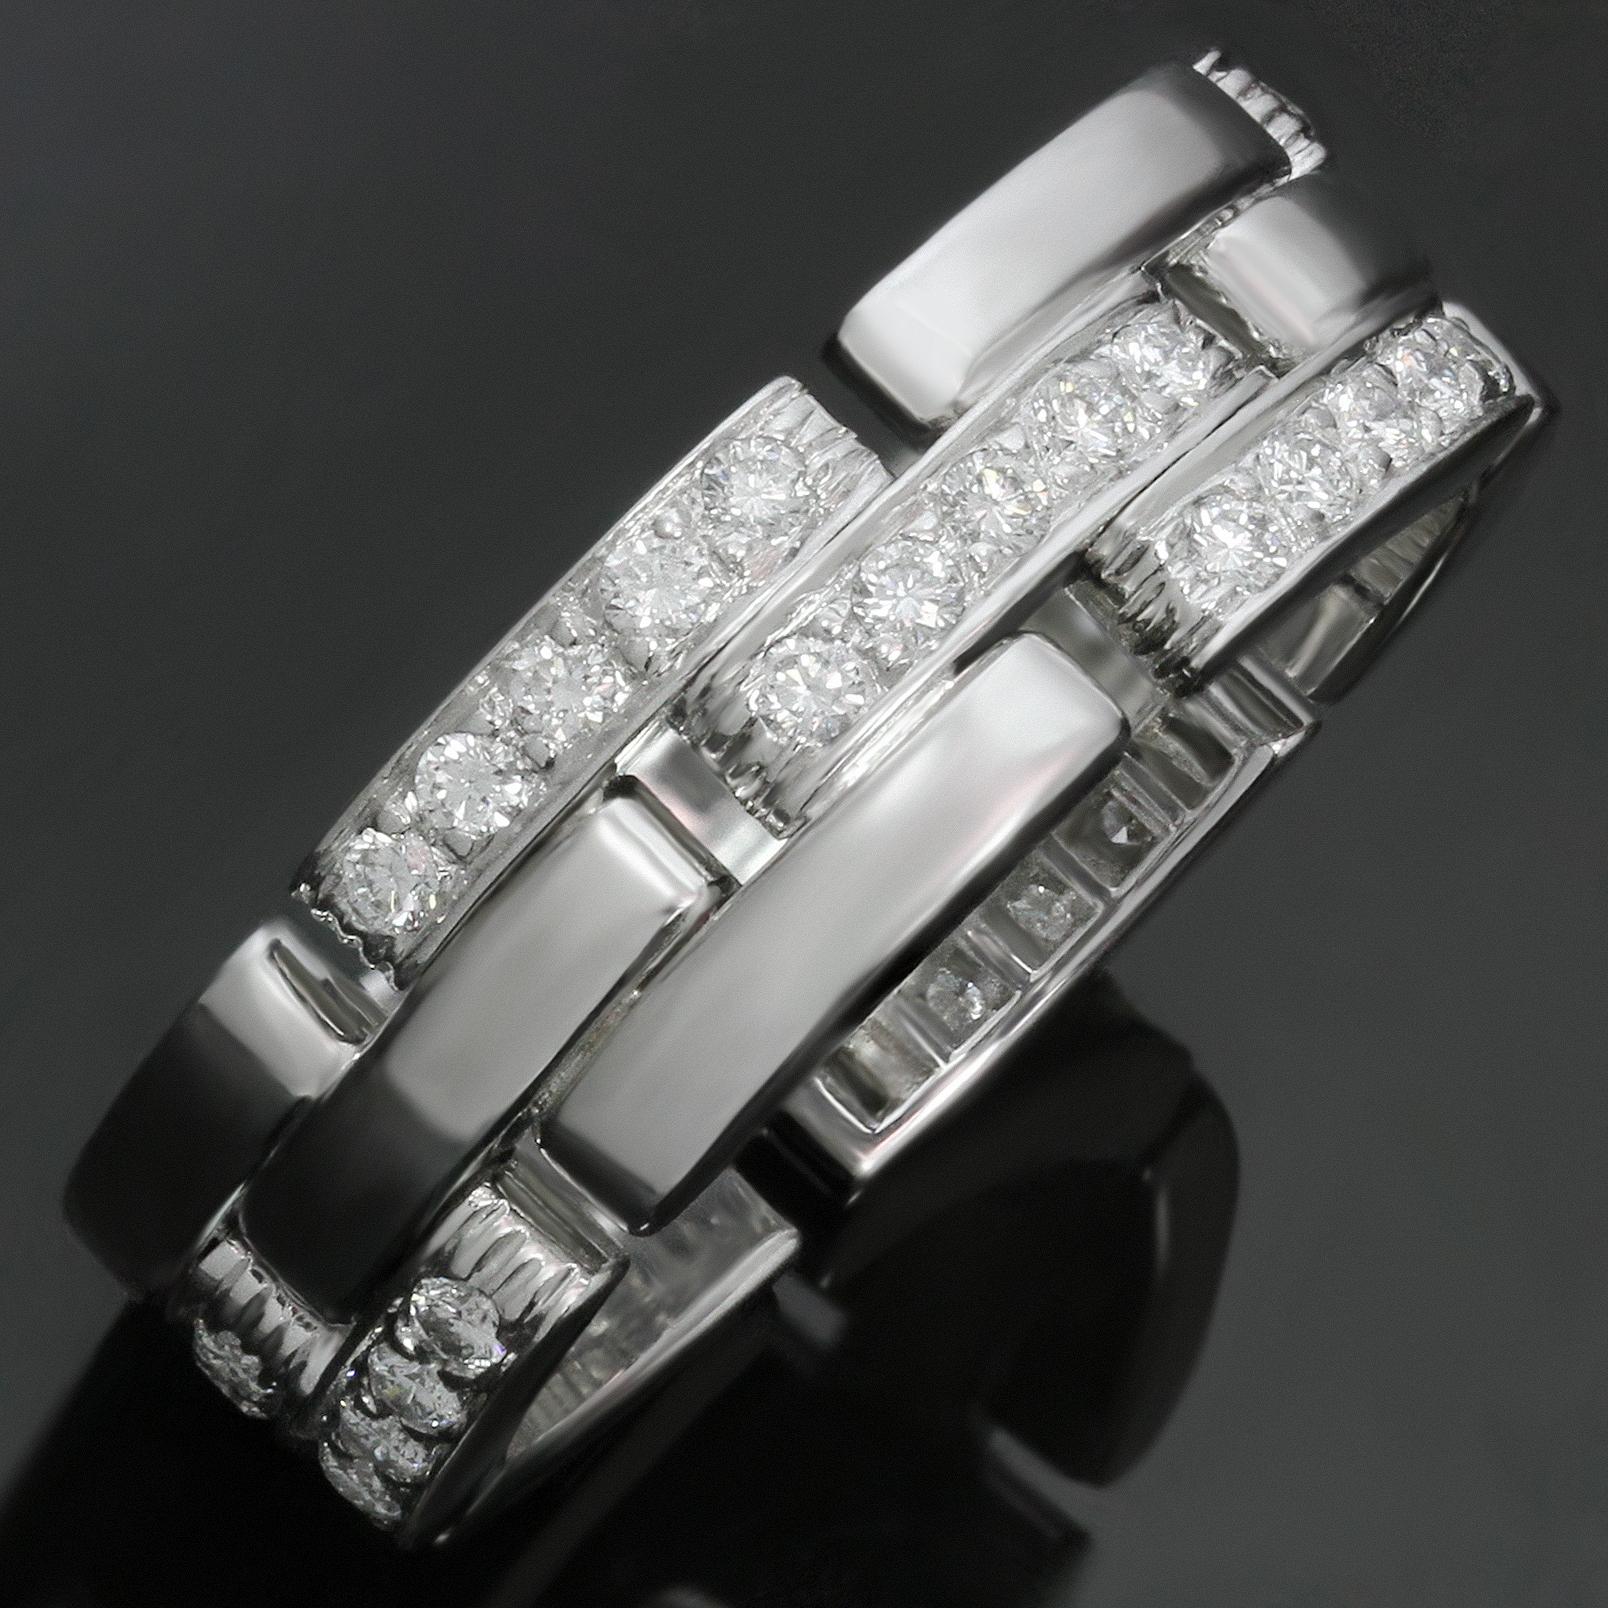 Ce bracelet intemporel de Cartier, issu de l'iconique collection Maillon Panthère, comporte 3 rangées de maillons en or blanc 18 carats, dont la moitié est pavée de diamants ronds taille brillant d'une valeur estimée à 0,70 carat. La bague est